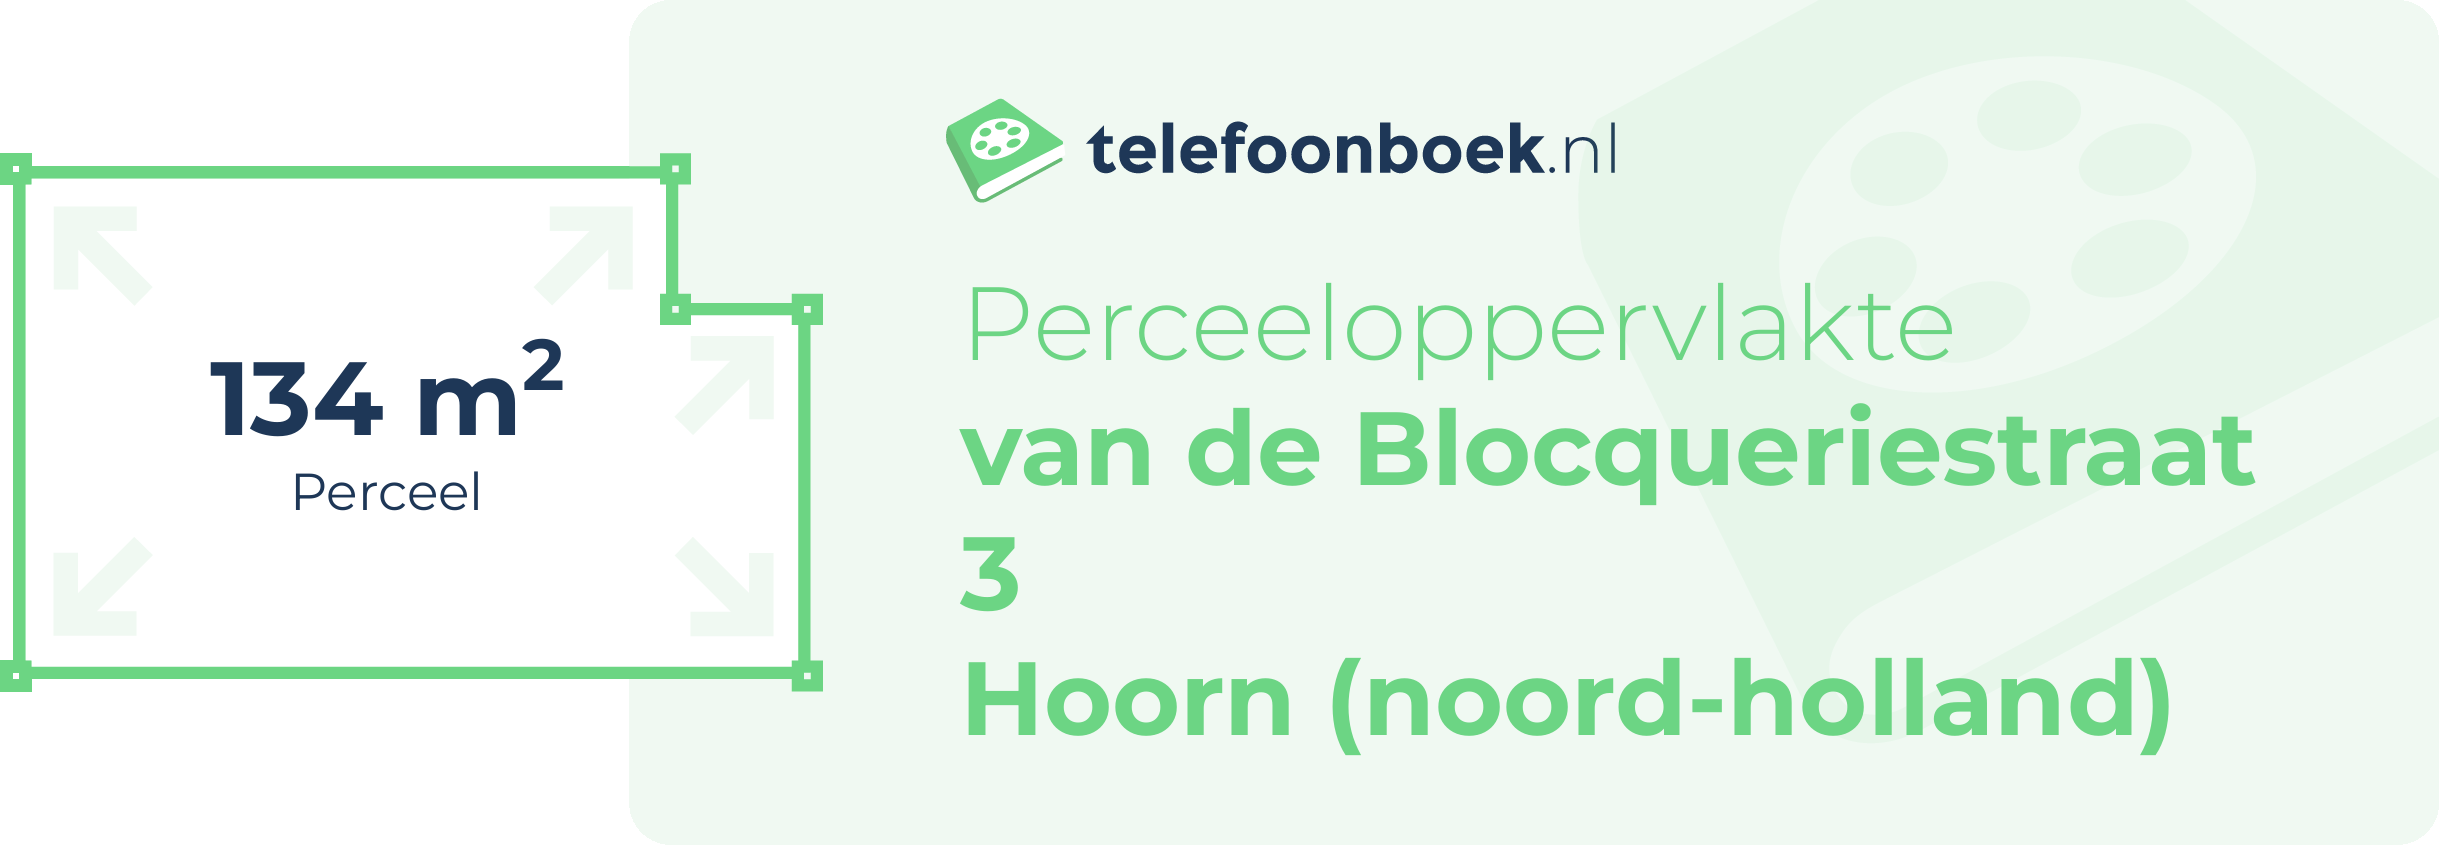 Perceeloppervlakte Van De Blocqueriestraat 3 Hoorn (Noord-Holland)